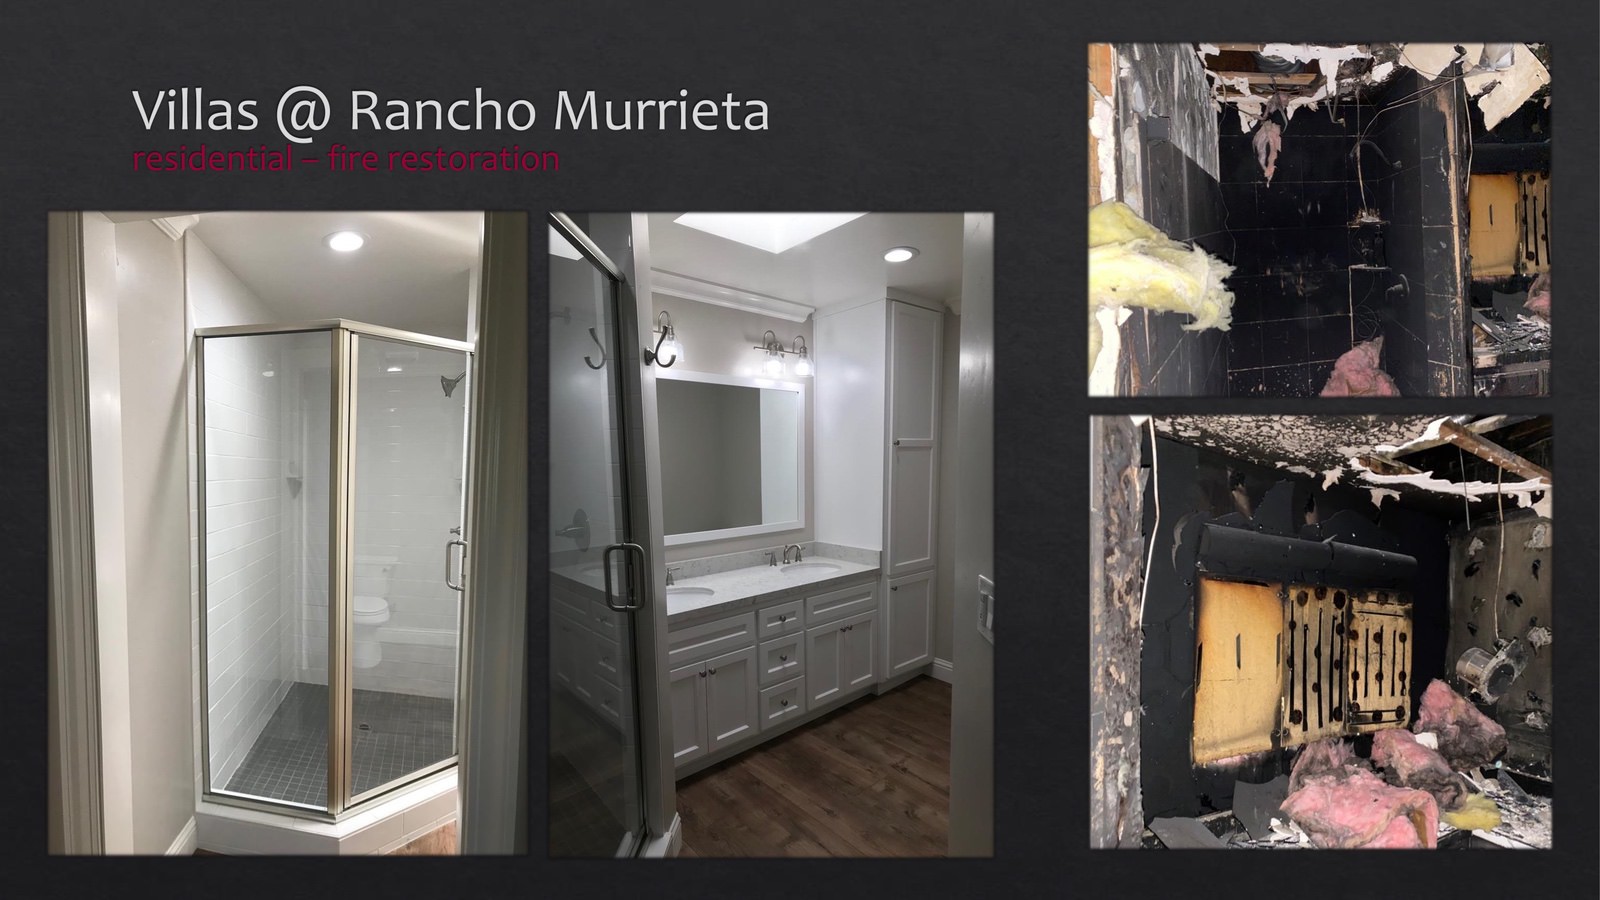 Rancho Murrieta Villas Residential fire restoration - bathroom